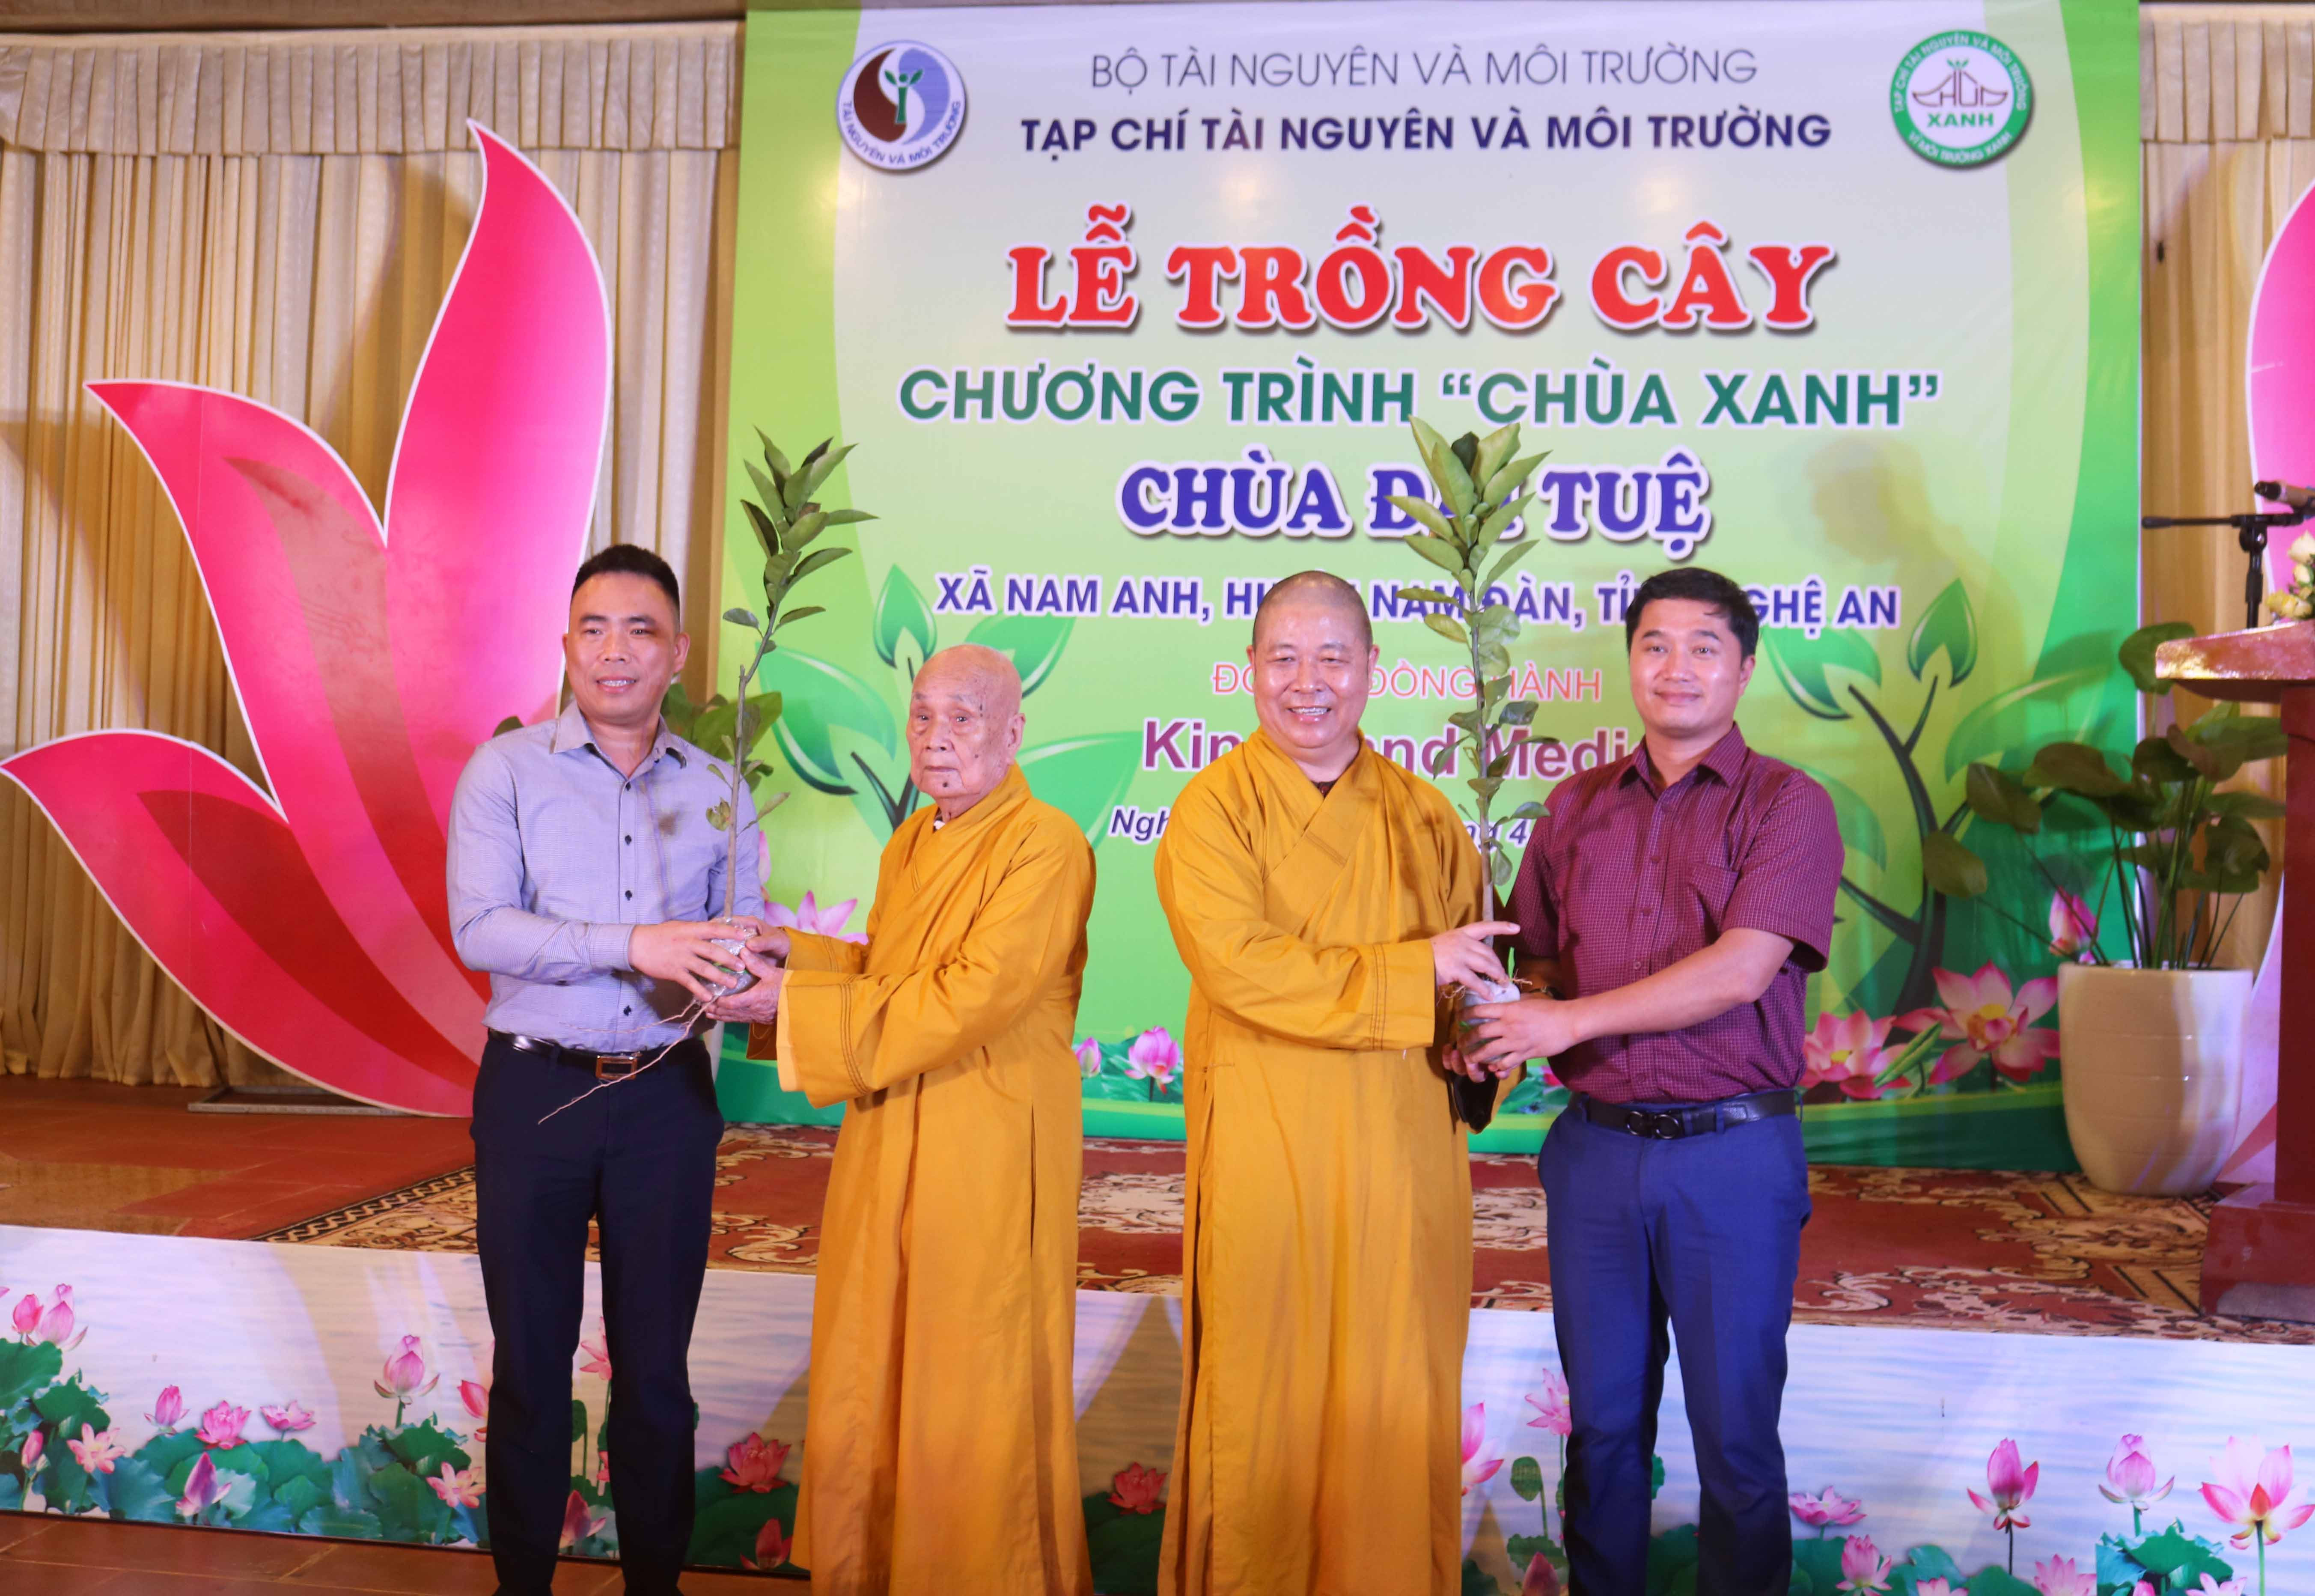 Đại diện Tạp chí Tài Nguyên và Môi trường trao tặng cây xanh cho nhà chùa. Ảnh: Huy Thư